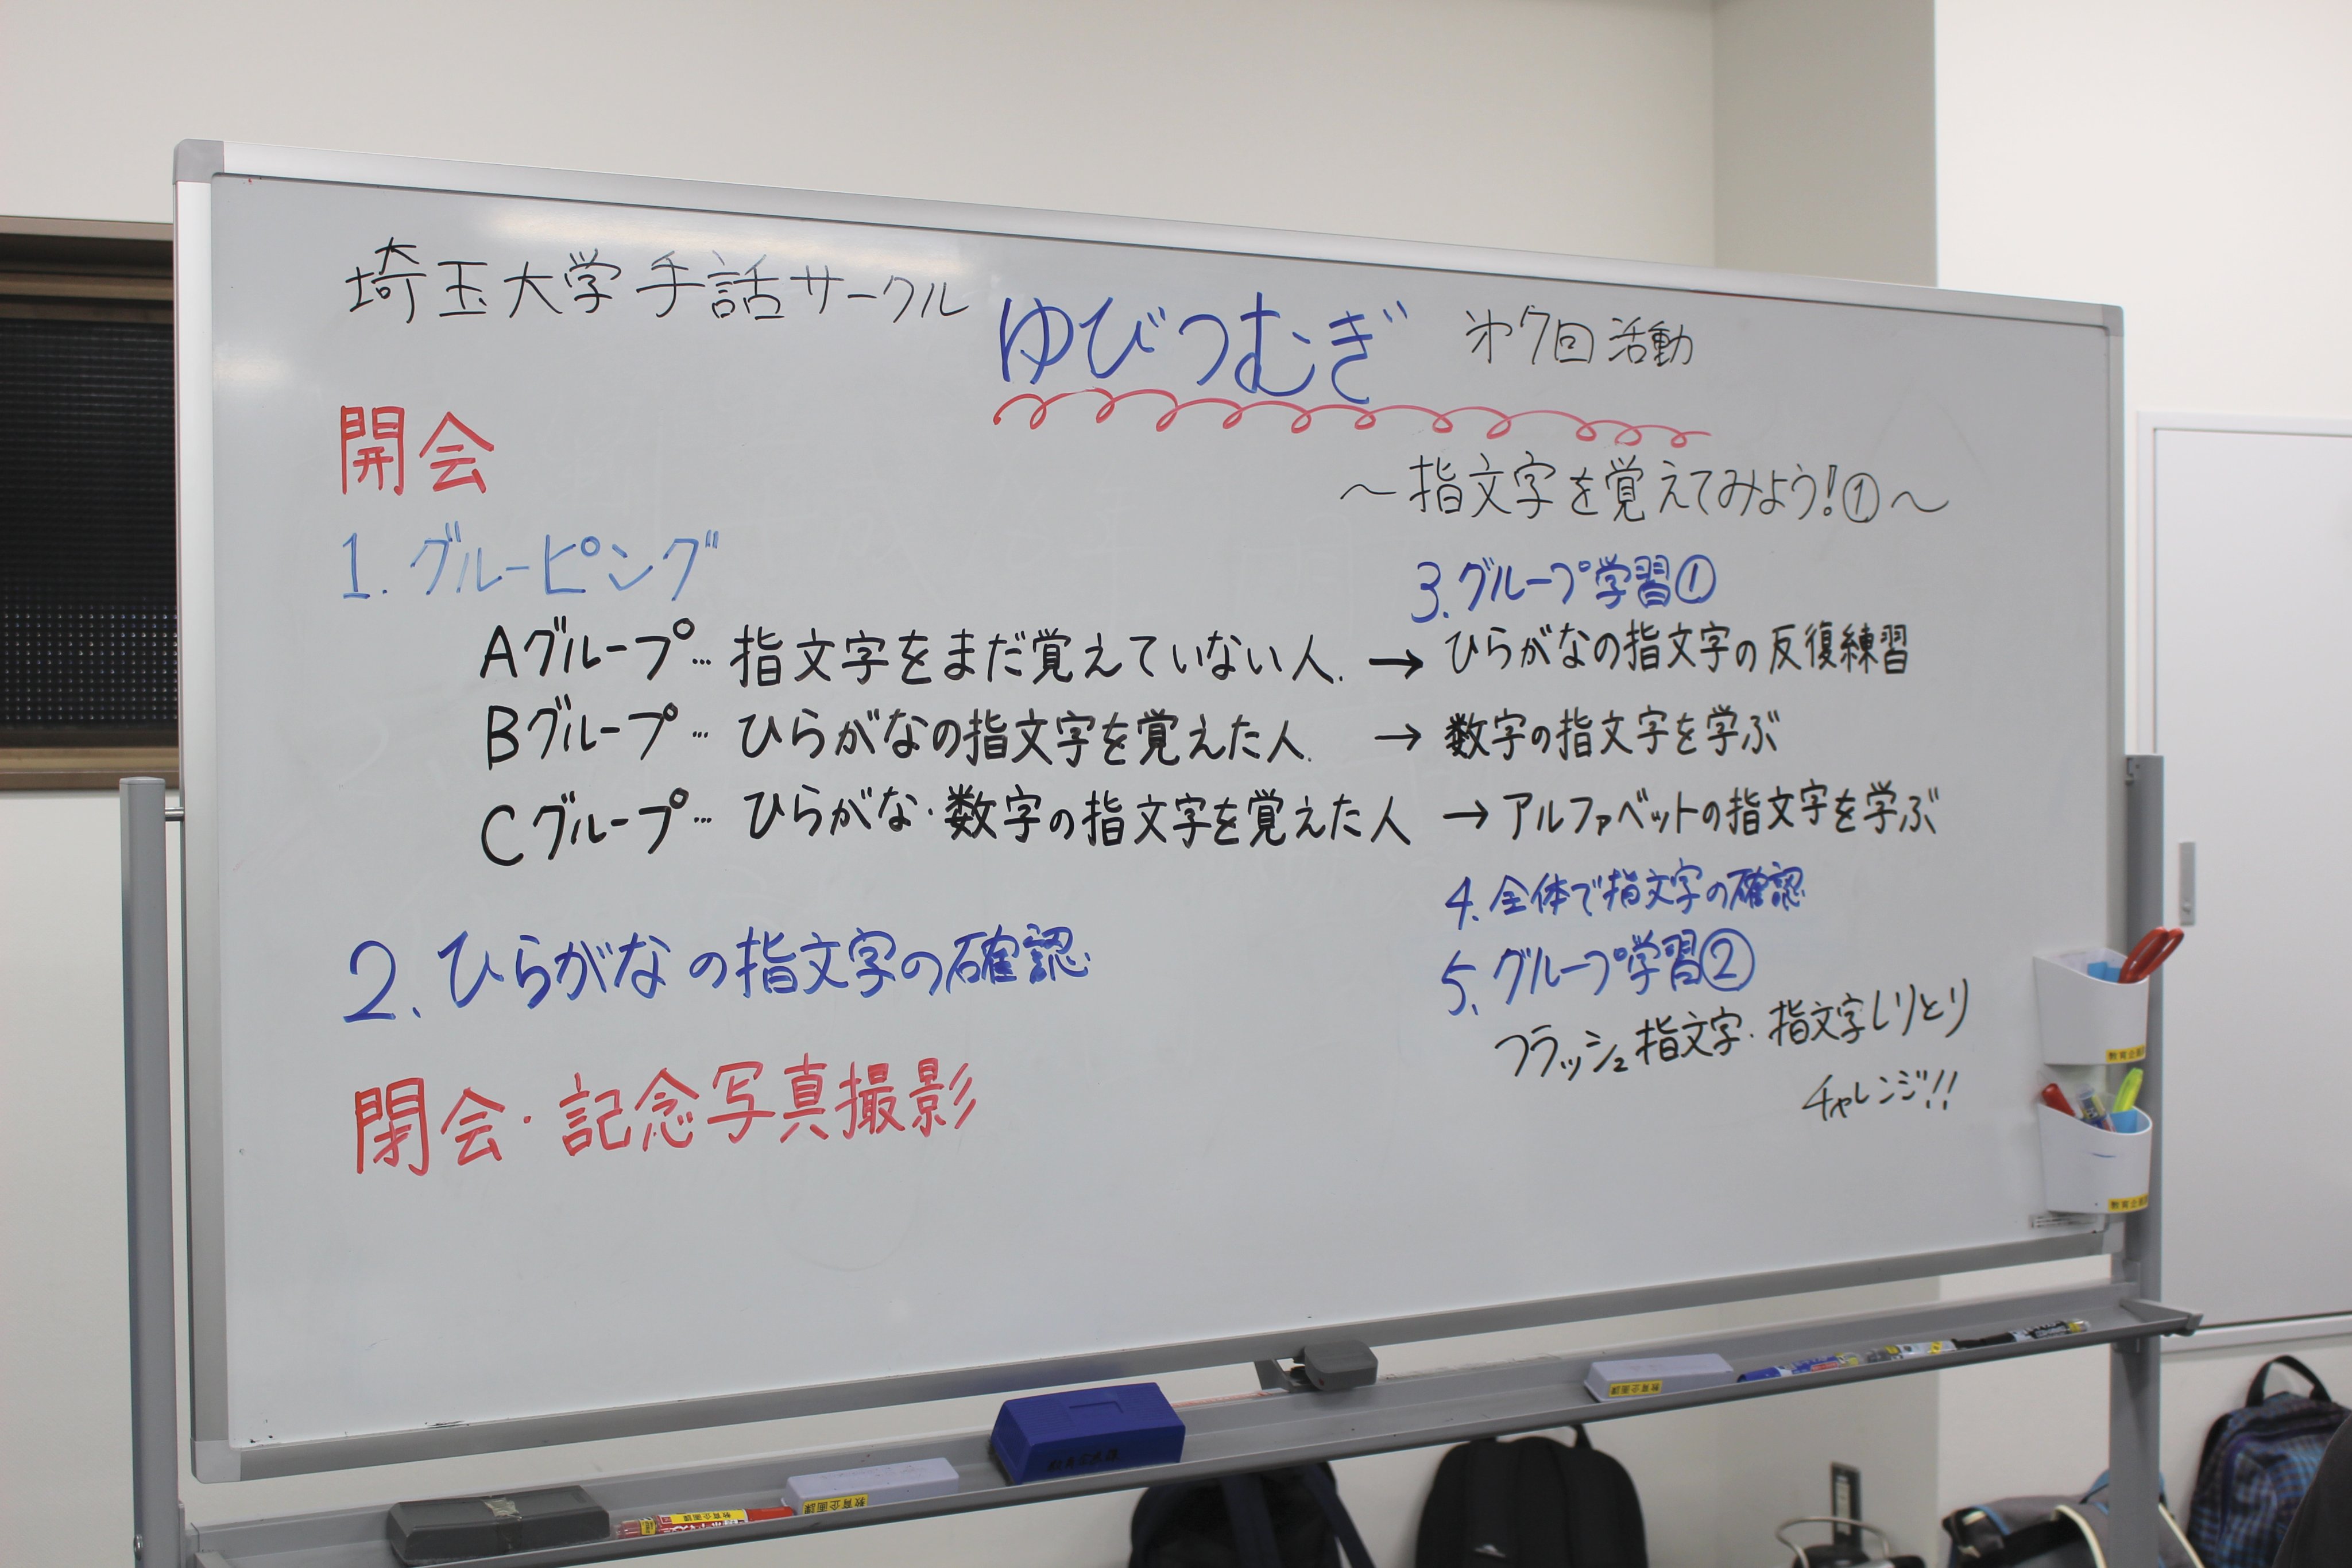 埼玉大学手話サークル ゆびつむぎ 5 11の活動報告 昨日の活動では 手話の入り口を知ってみようということで 指文字の学習を行いました 基本的なひらがな50音から始まり 中には数字 アルファベットの表現までできるようになった方もおられました